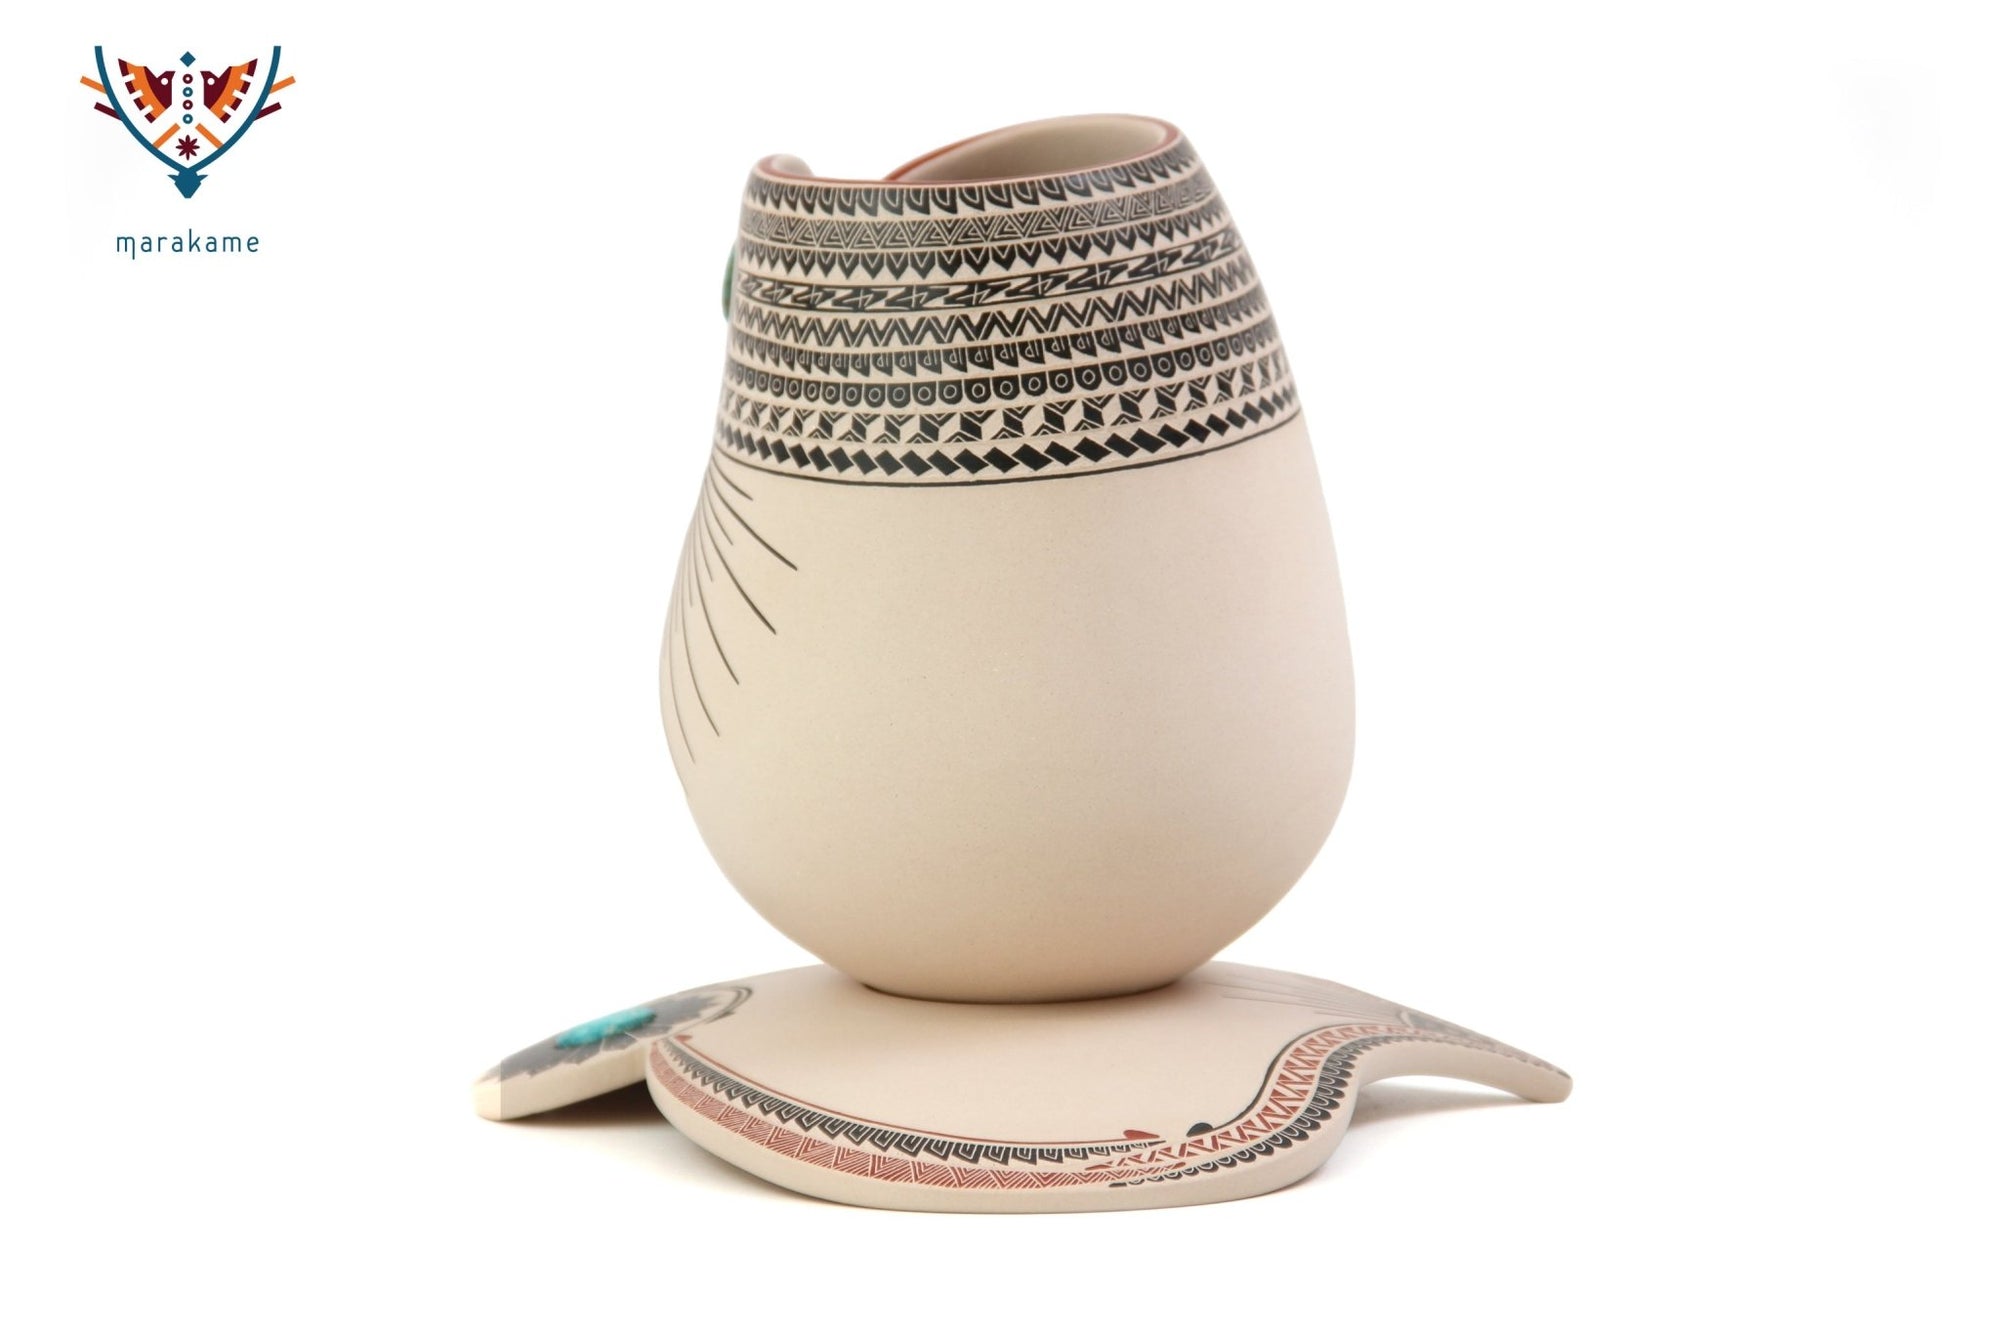 Mata Ortiz Keramik – Türkise – Huichol-Kunst – Marakame